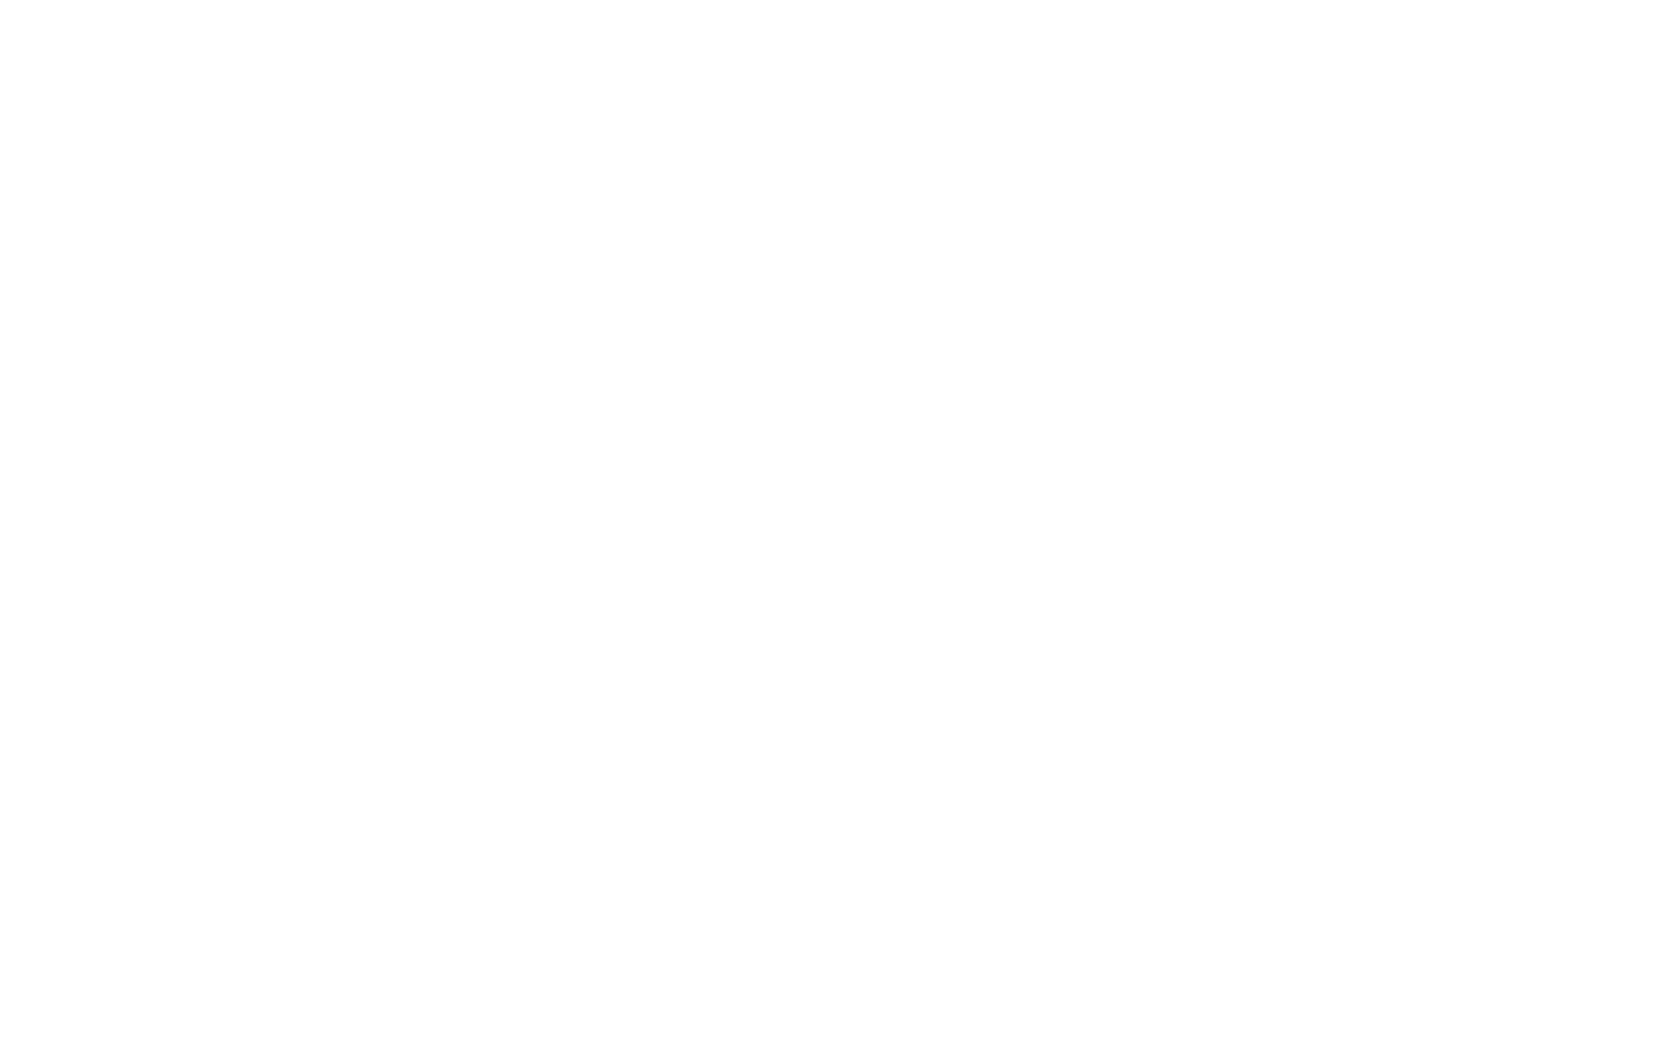 Торцевая заглушка Flexy TOREC LINE 30 для профилей Flexy: размер, вид, применение, способ монтажа в Беларуси (РБ)